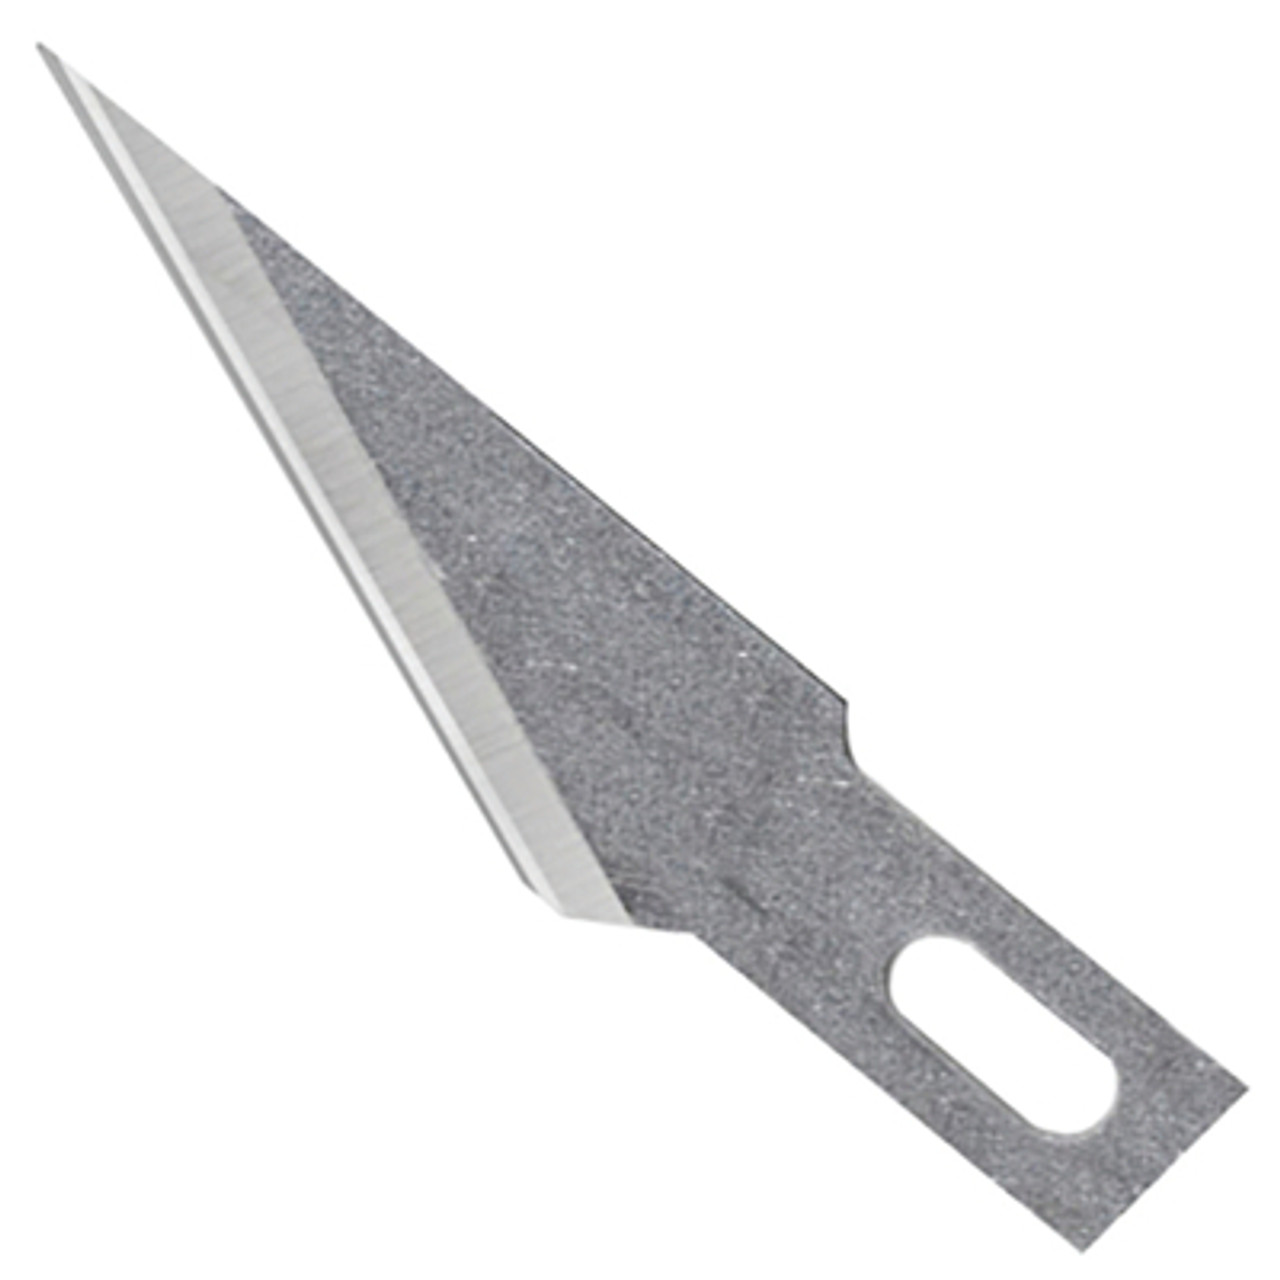 #11 Hobby Knife Blades (5 pack)